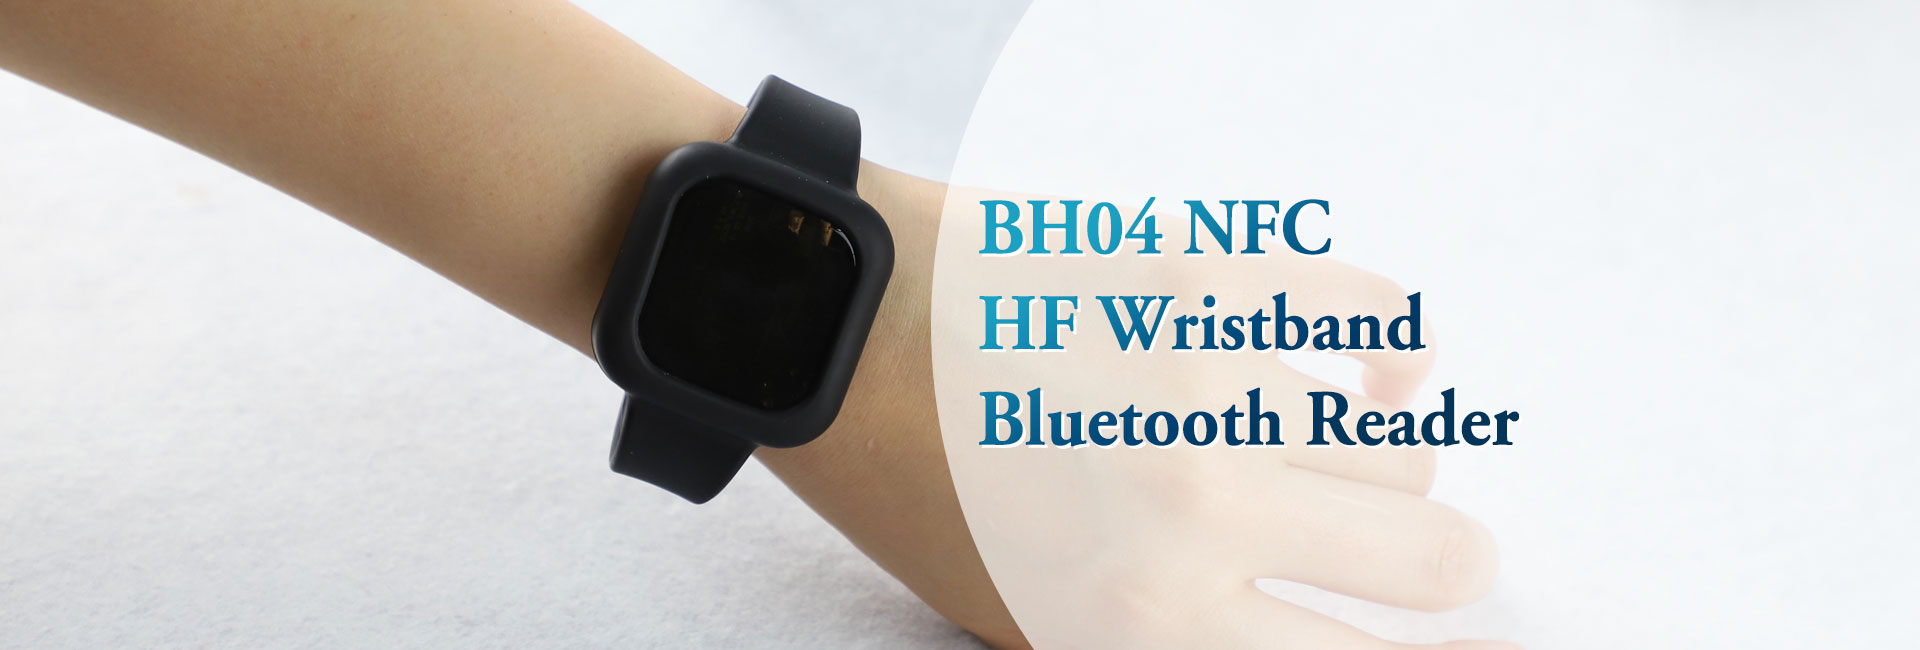 BH04 NFC高频腕带蓝牙阅读器